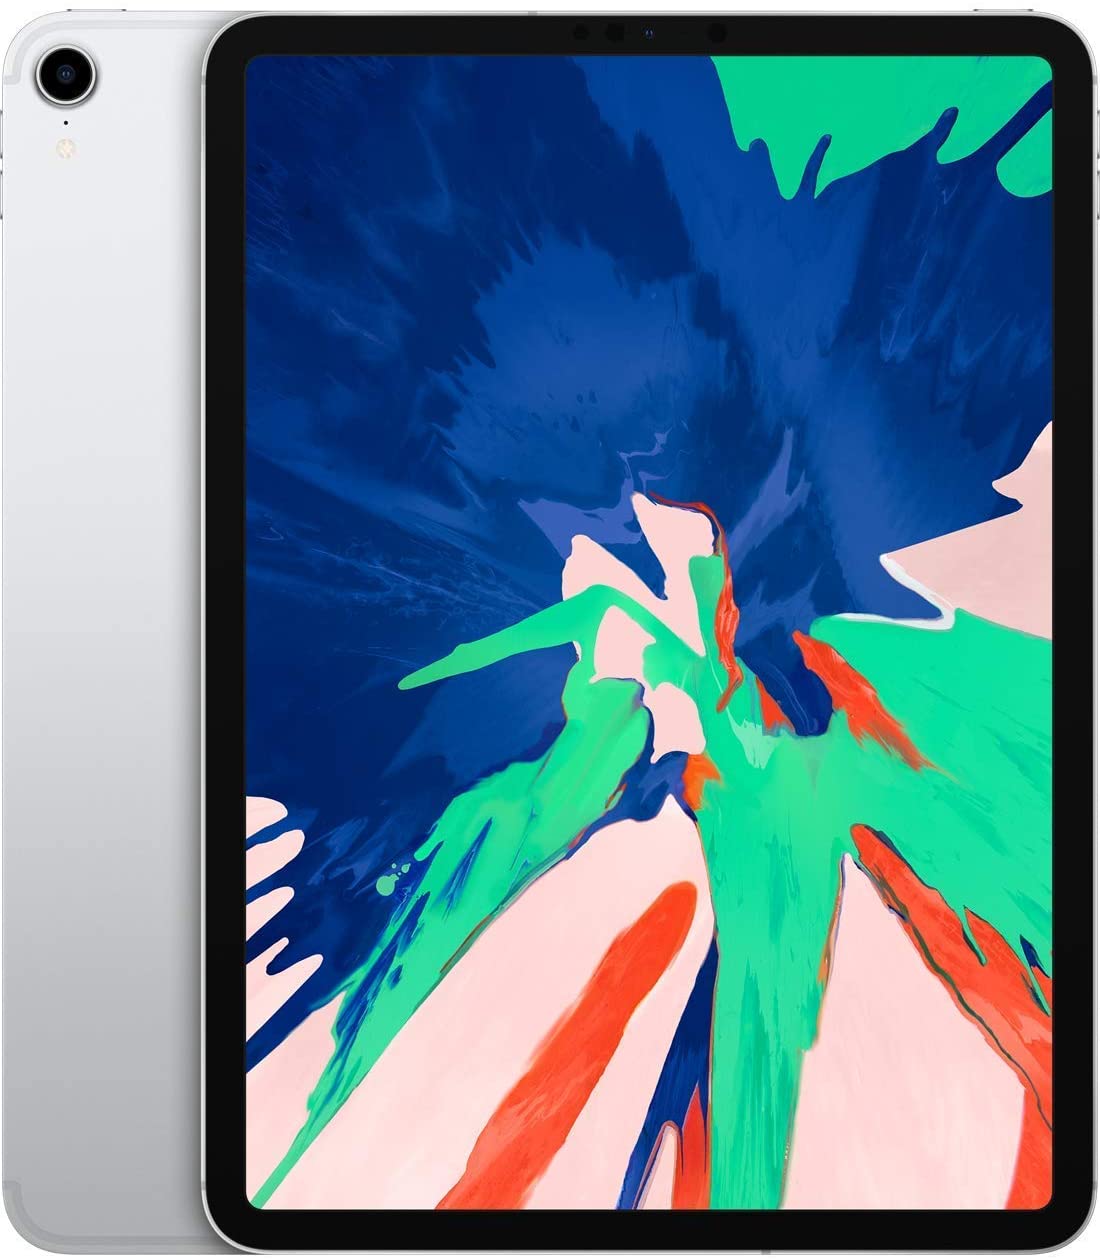 Apple iPad Pro 11-inch 1st Gen (2018) 64GB, WIFI + Unlocked Cellular - Silver (Certified Refurbished)